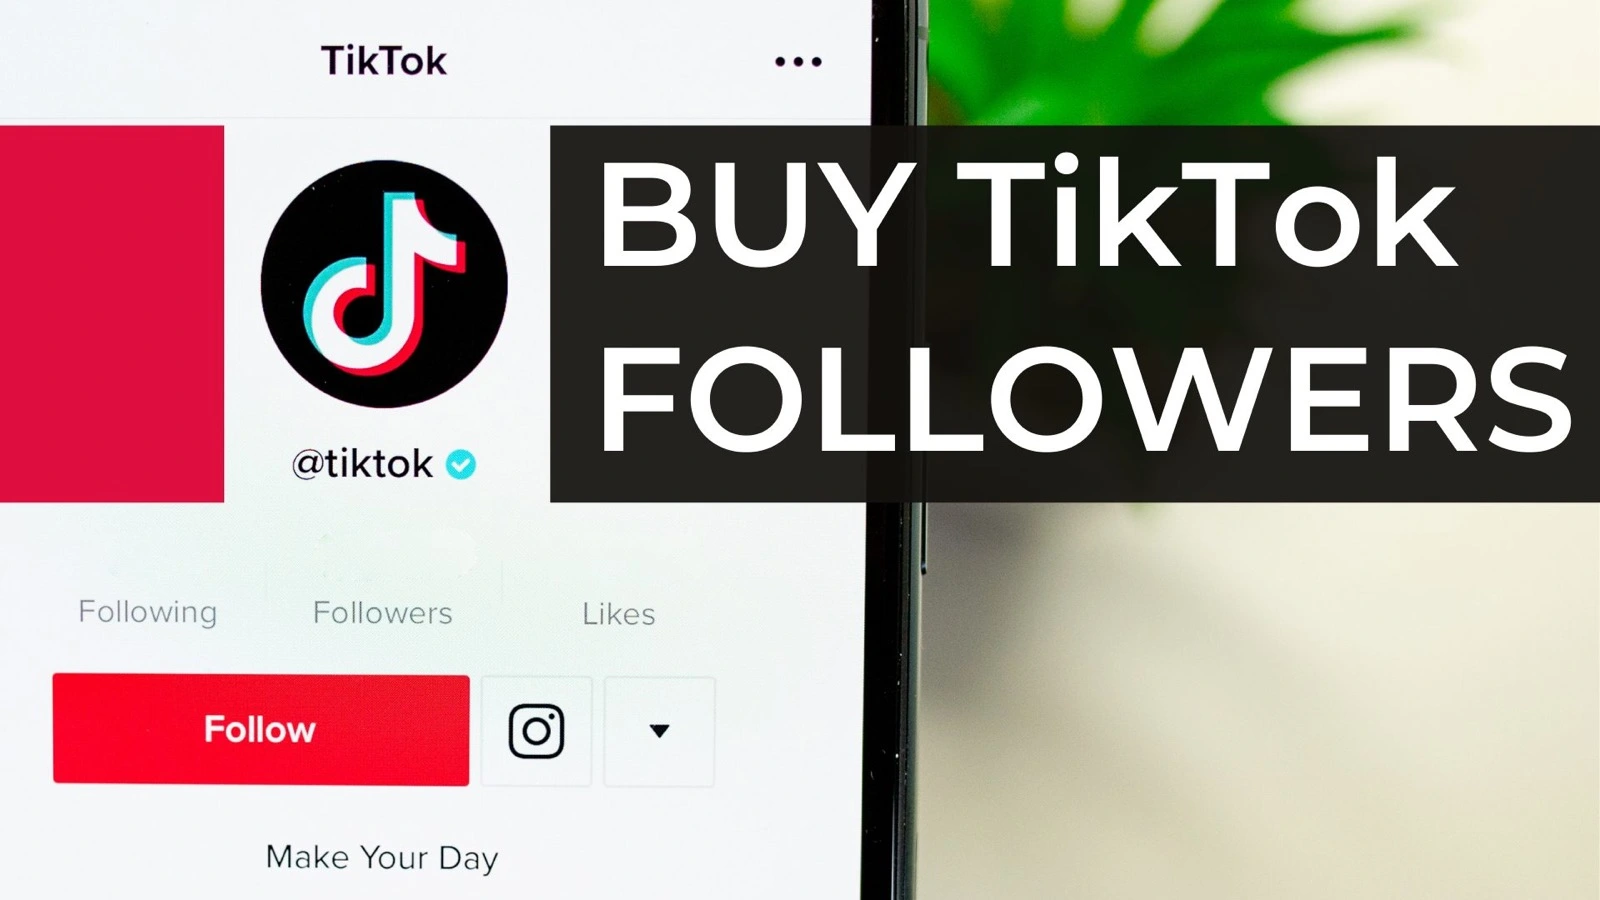 How to buy Tiktok followers?